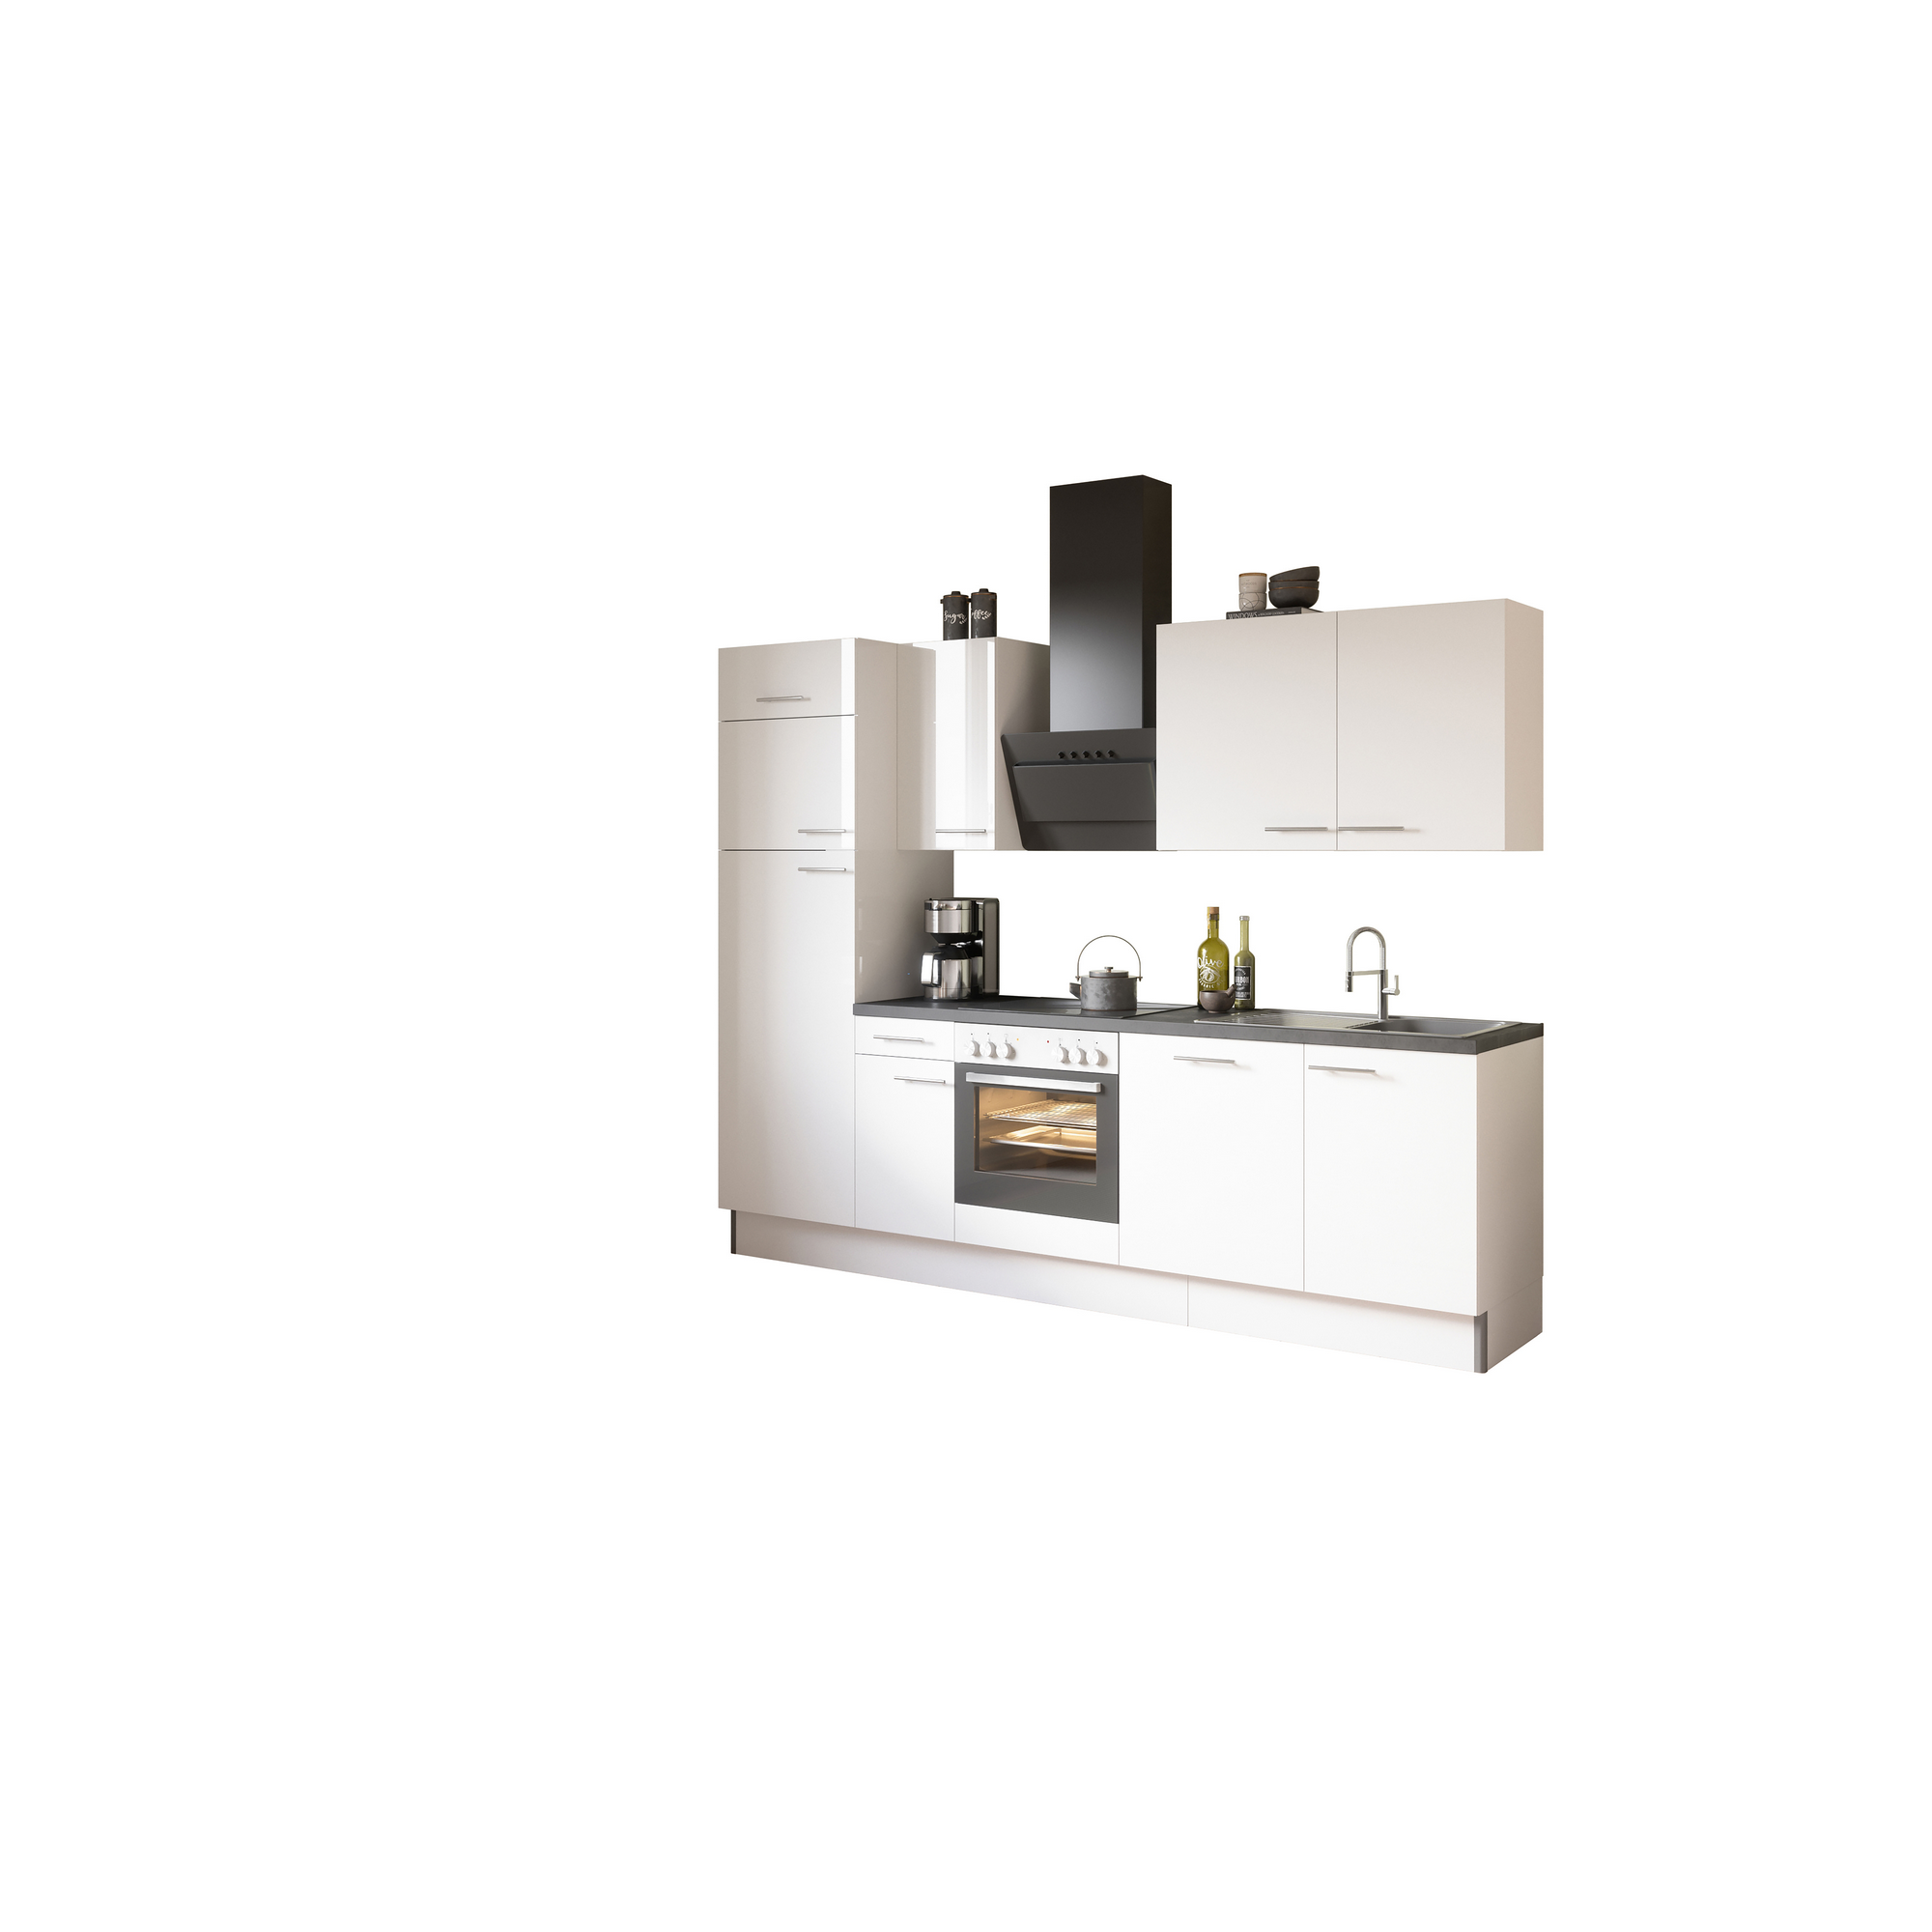 Küchenzeile mit E-Geräten 'OPTIkoncept Rurik986' weiß 270 cm + product picture